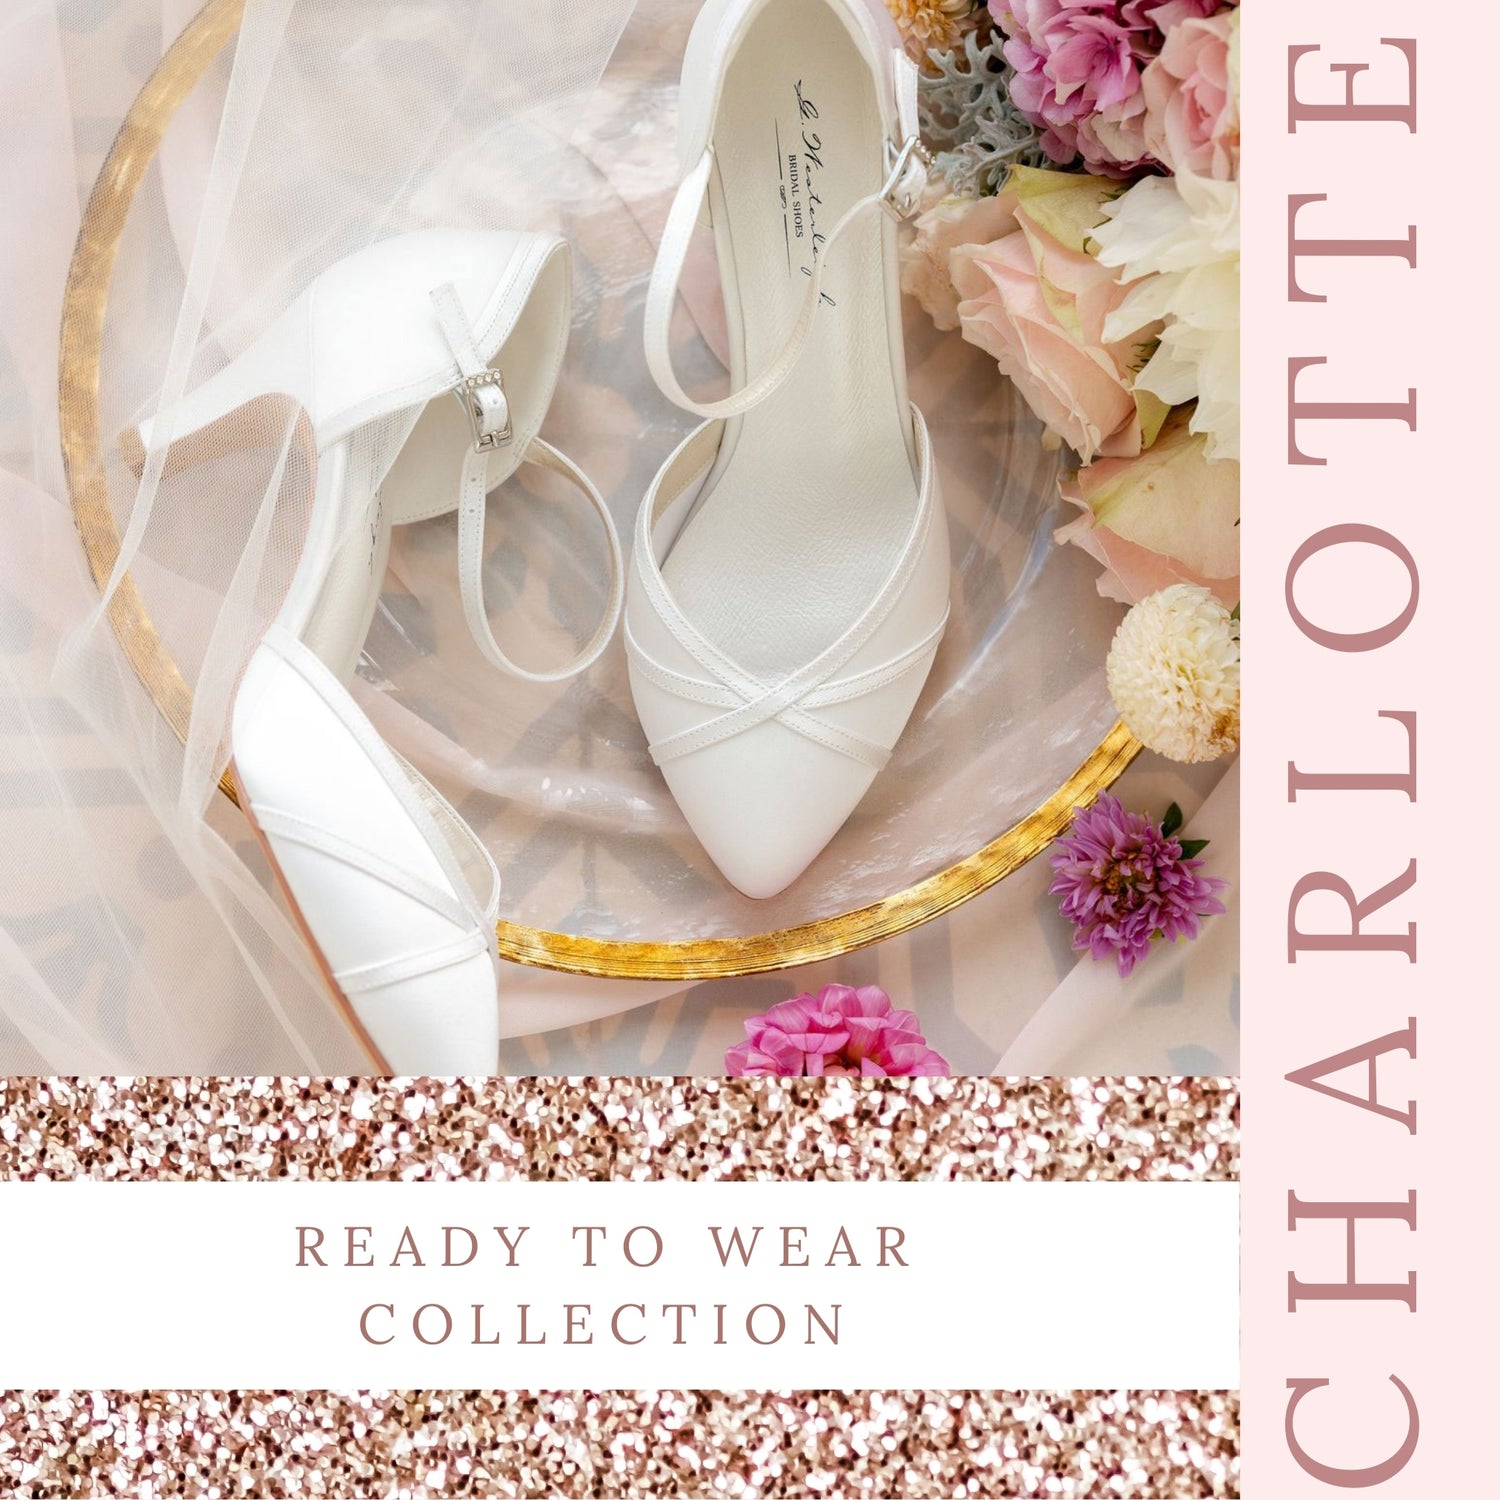 comfortable-low-heels-for-wedding